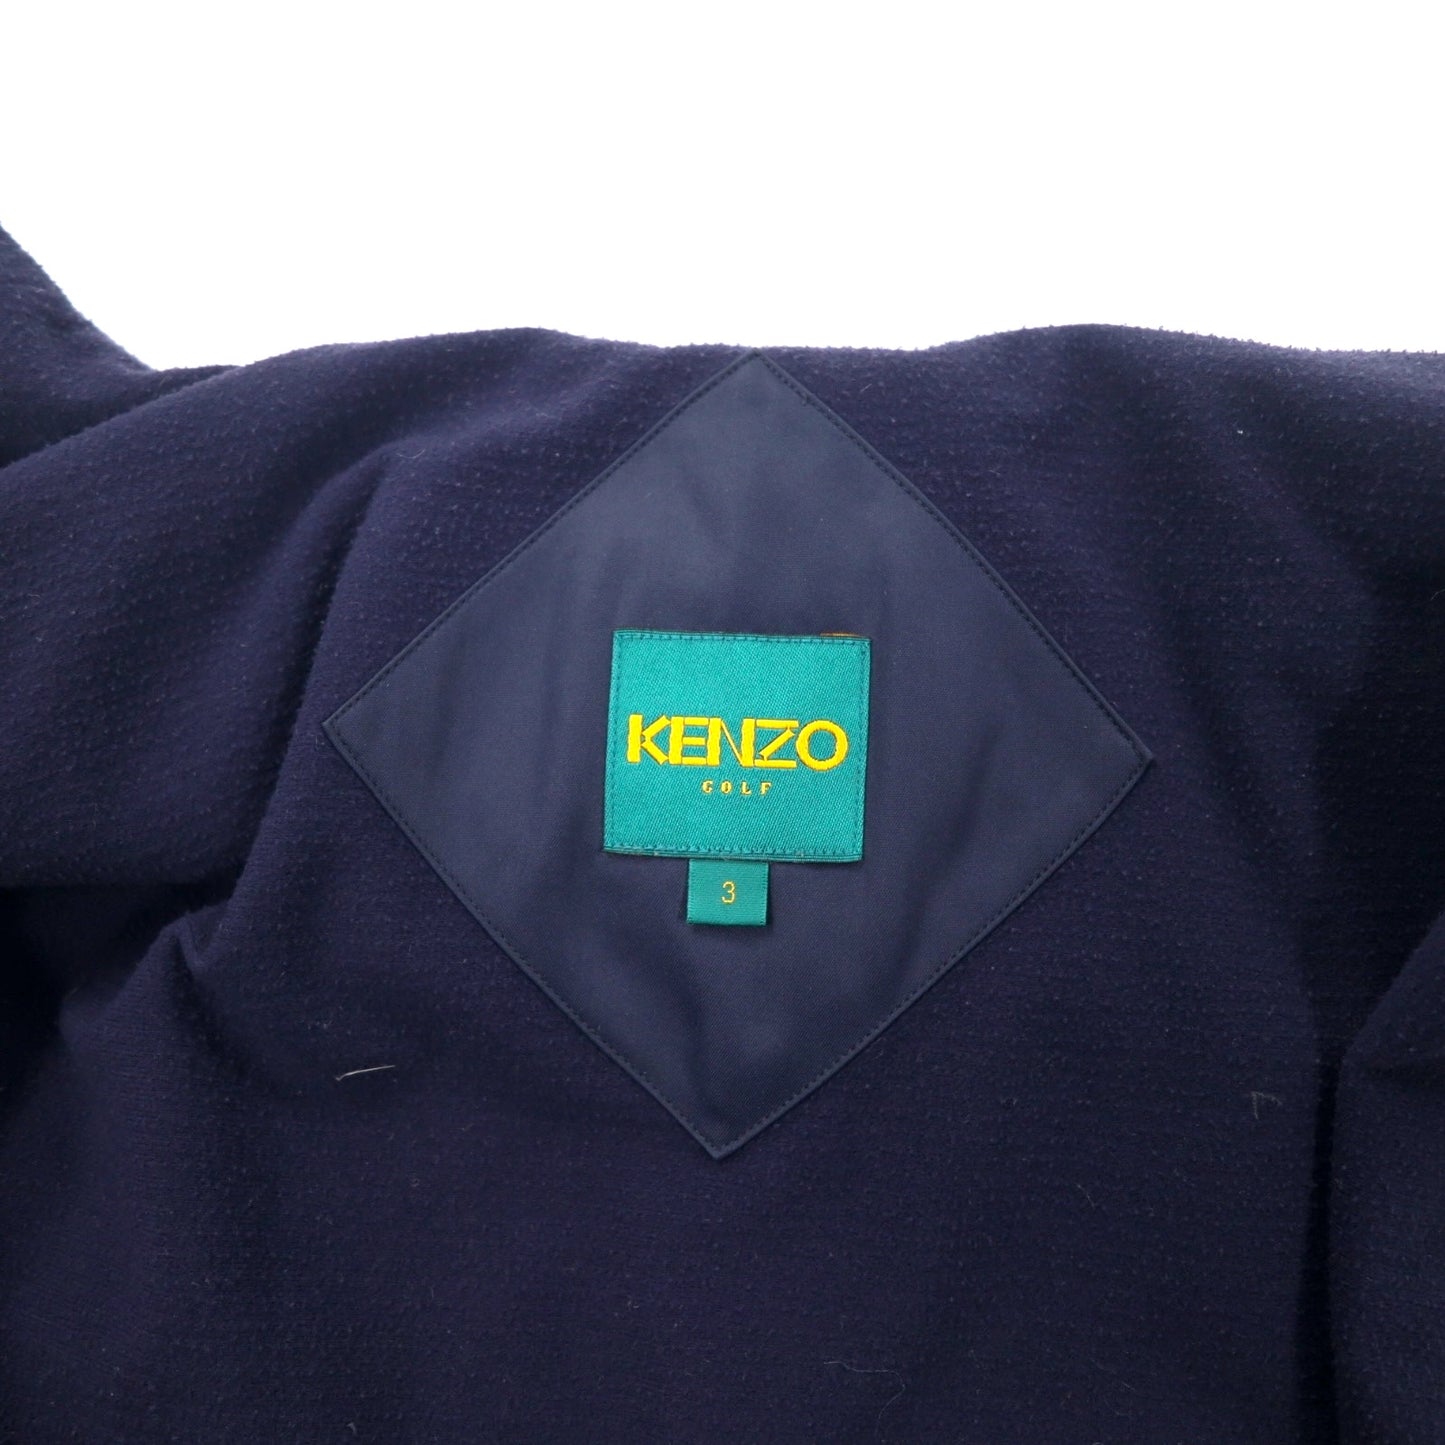 KENZO GOLF 90年代 ステンカラーコート 3 ネイビー ポリエステル 中綿ライナー着脱式 ロゴ刺繍